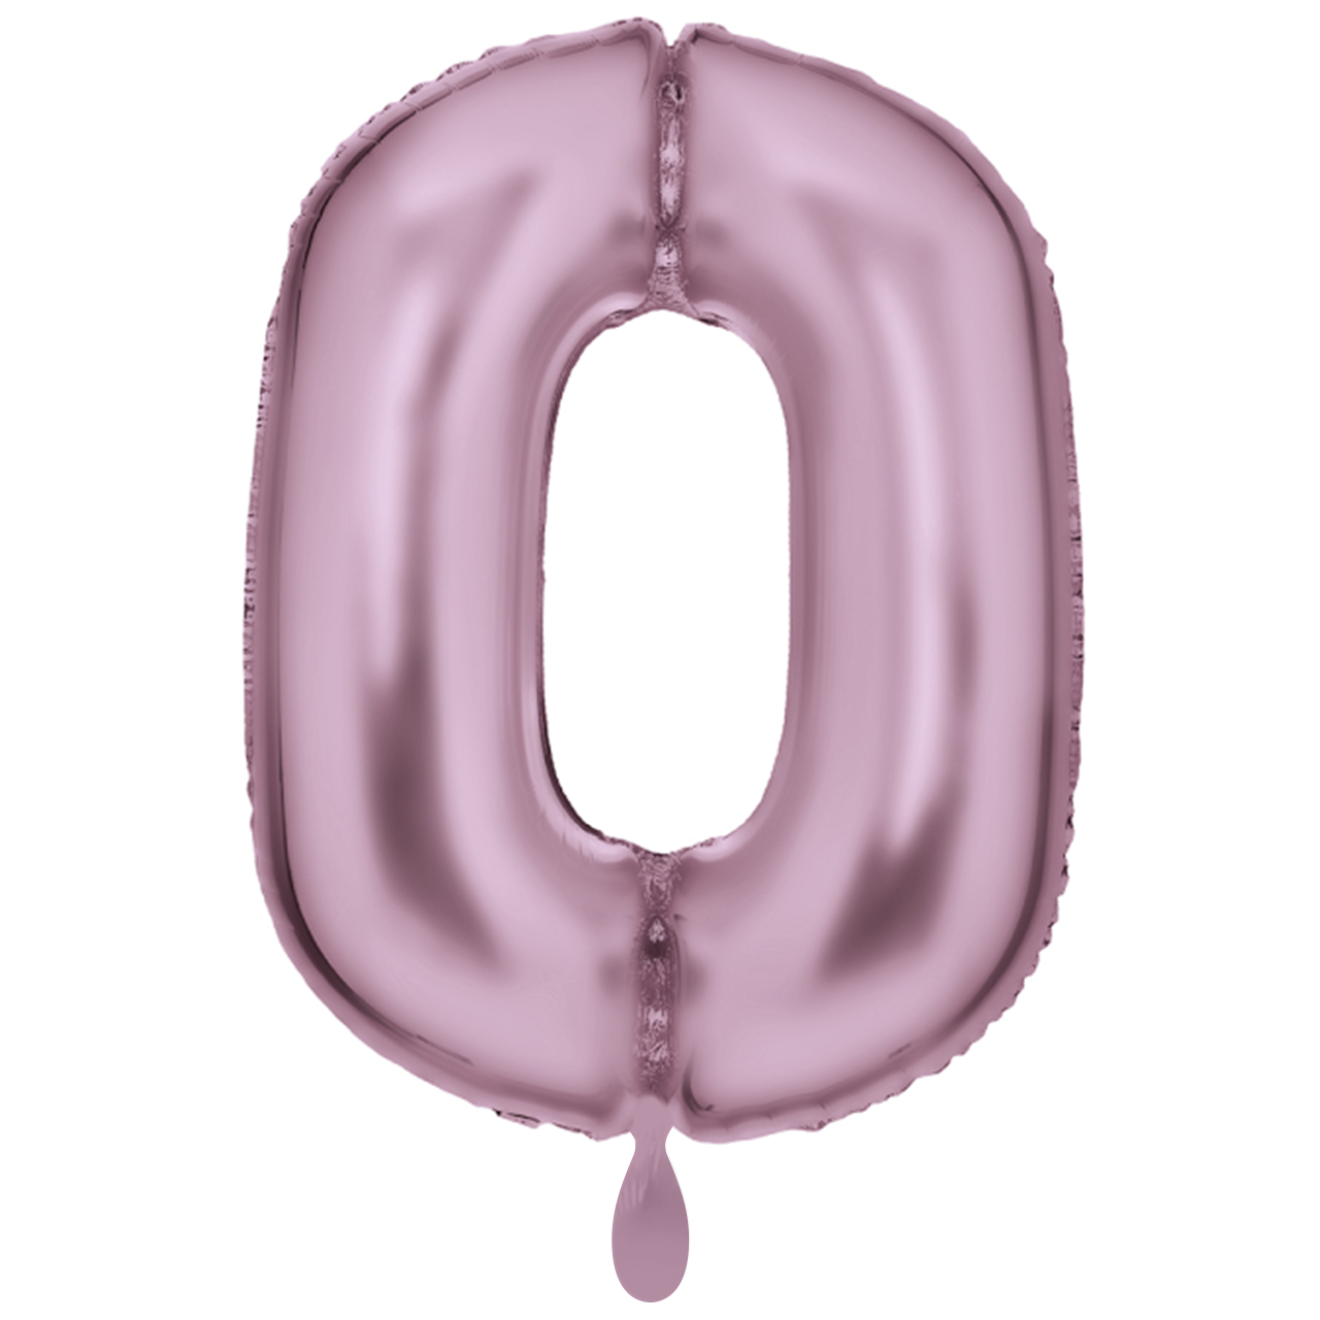 1 Balloon XXL - Zahl 0 - Silk Lustre Pastel Pink